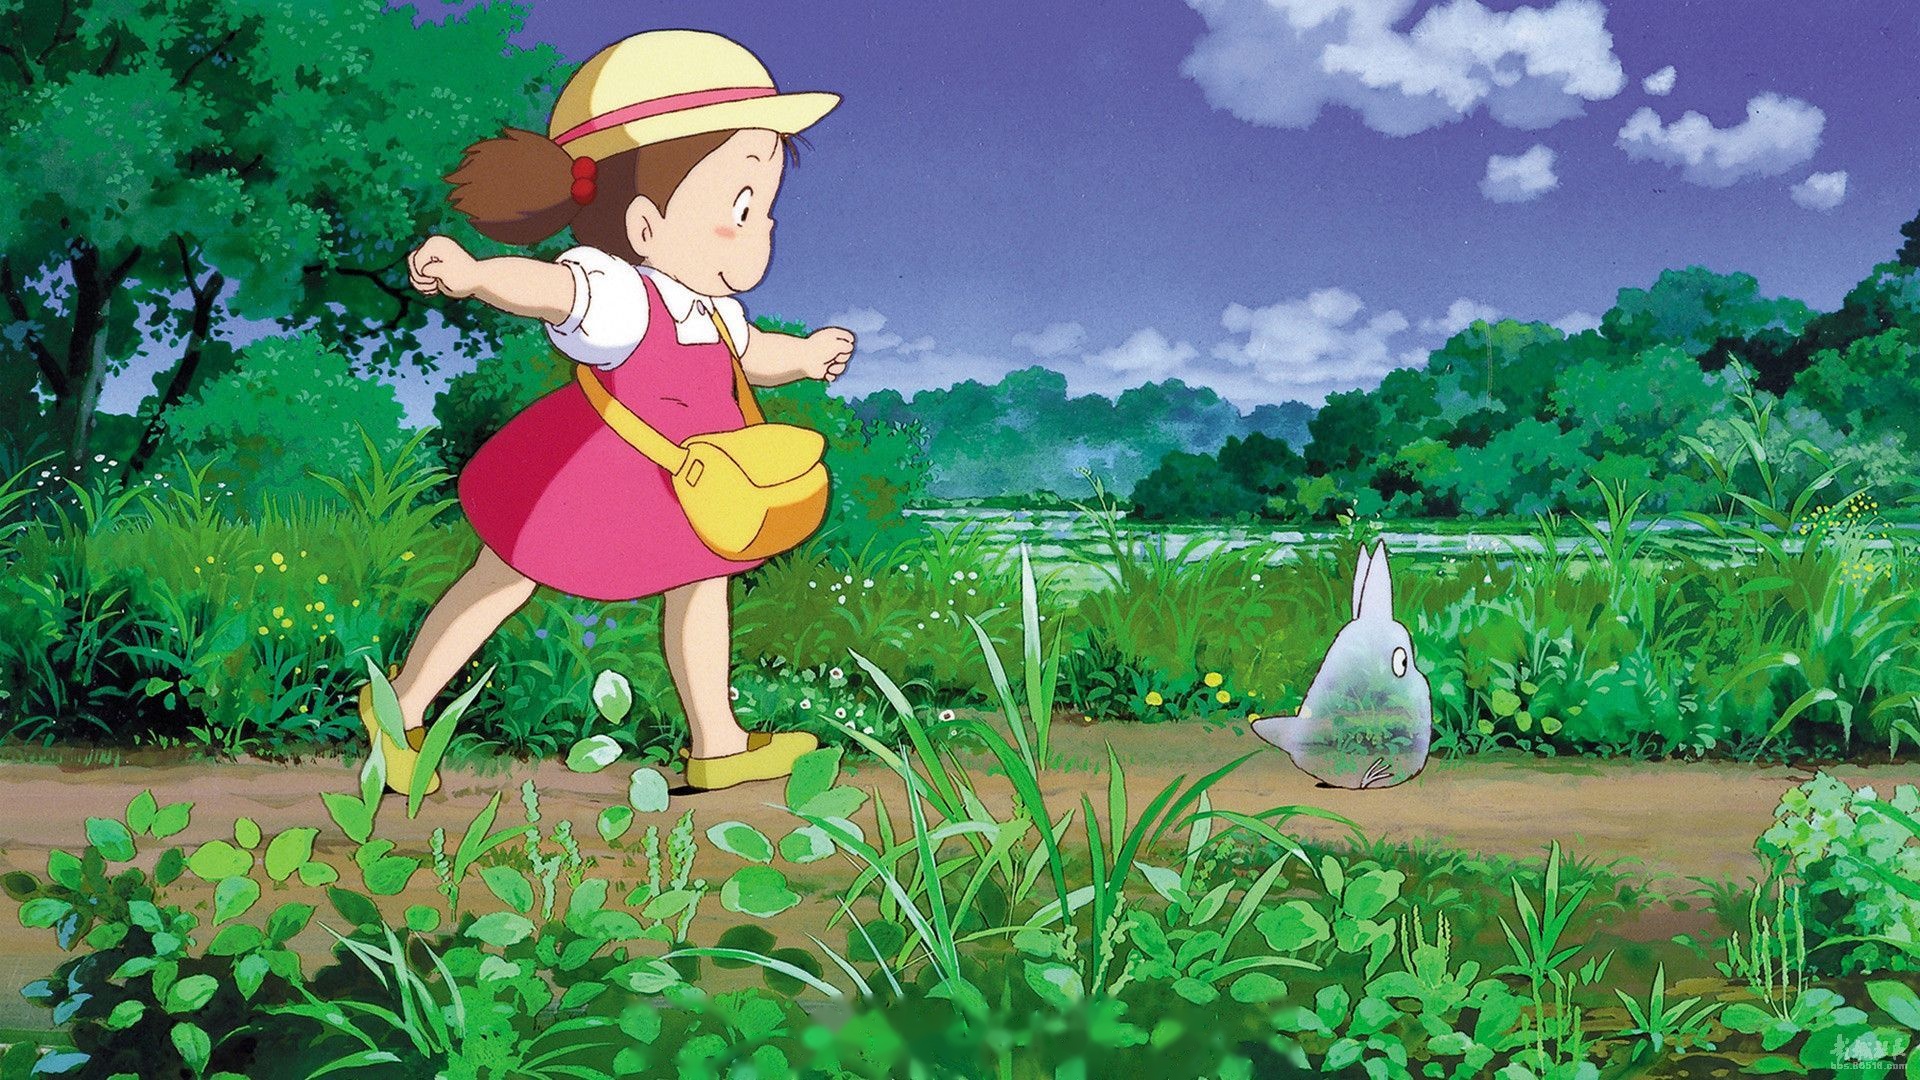 与其说全世界都爱宫崎骏的动画,不如说我们都爱动画里那份甜蜜的,纯粹